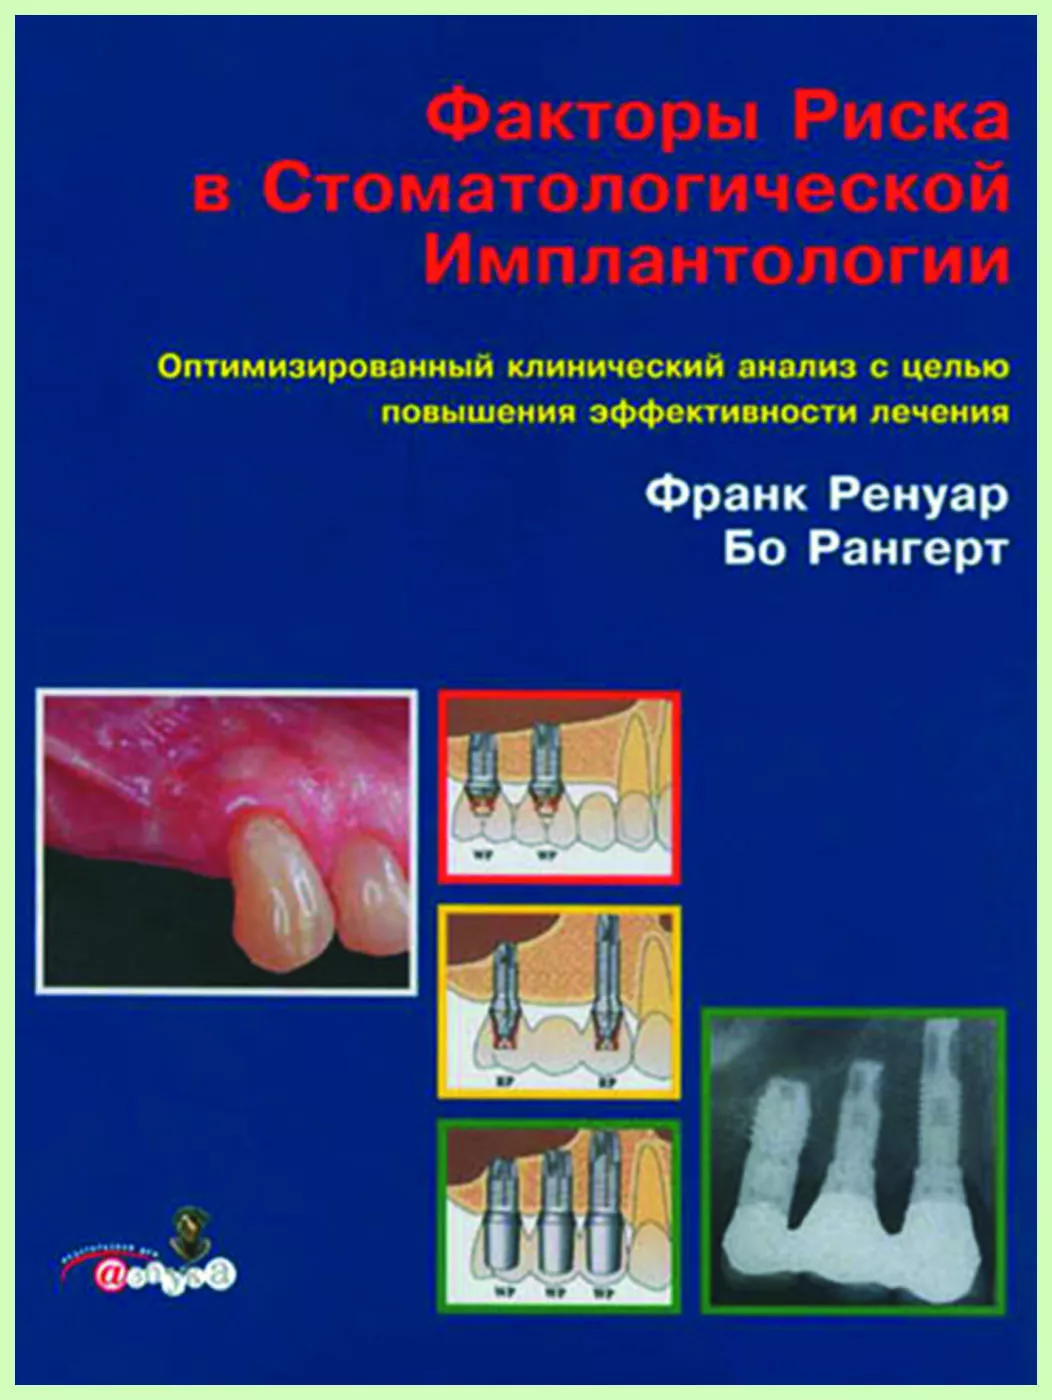 Книга "Факторы риска в стоматологической имплантологии" / Ф. Ренуар